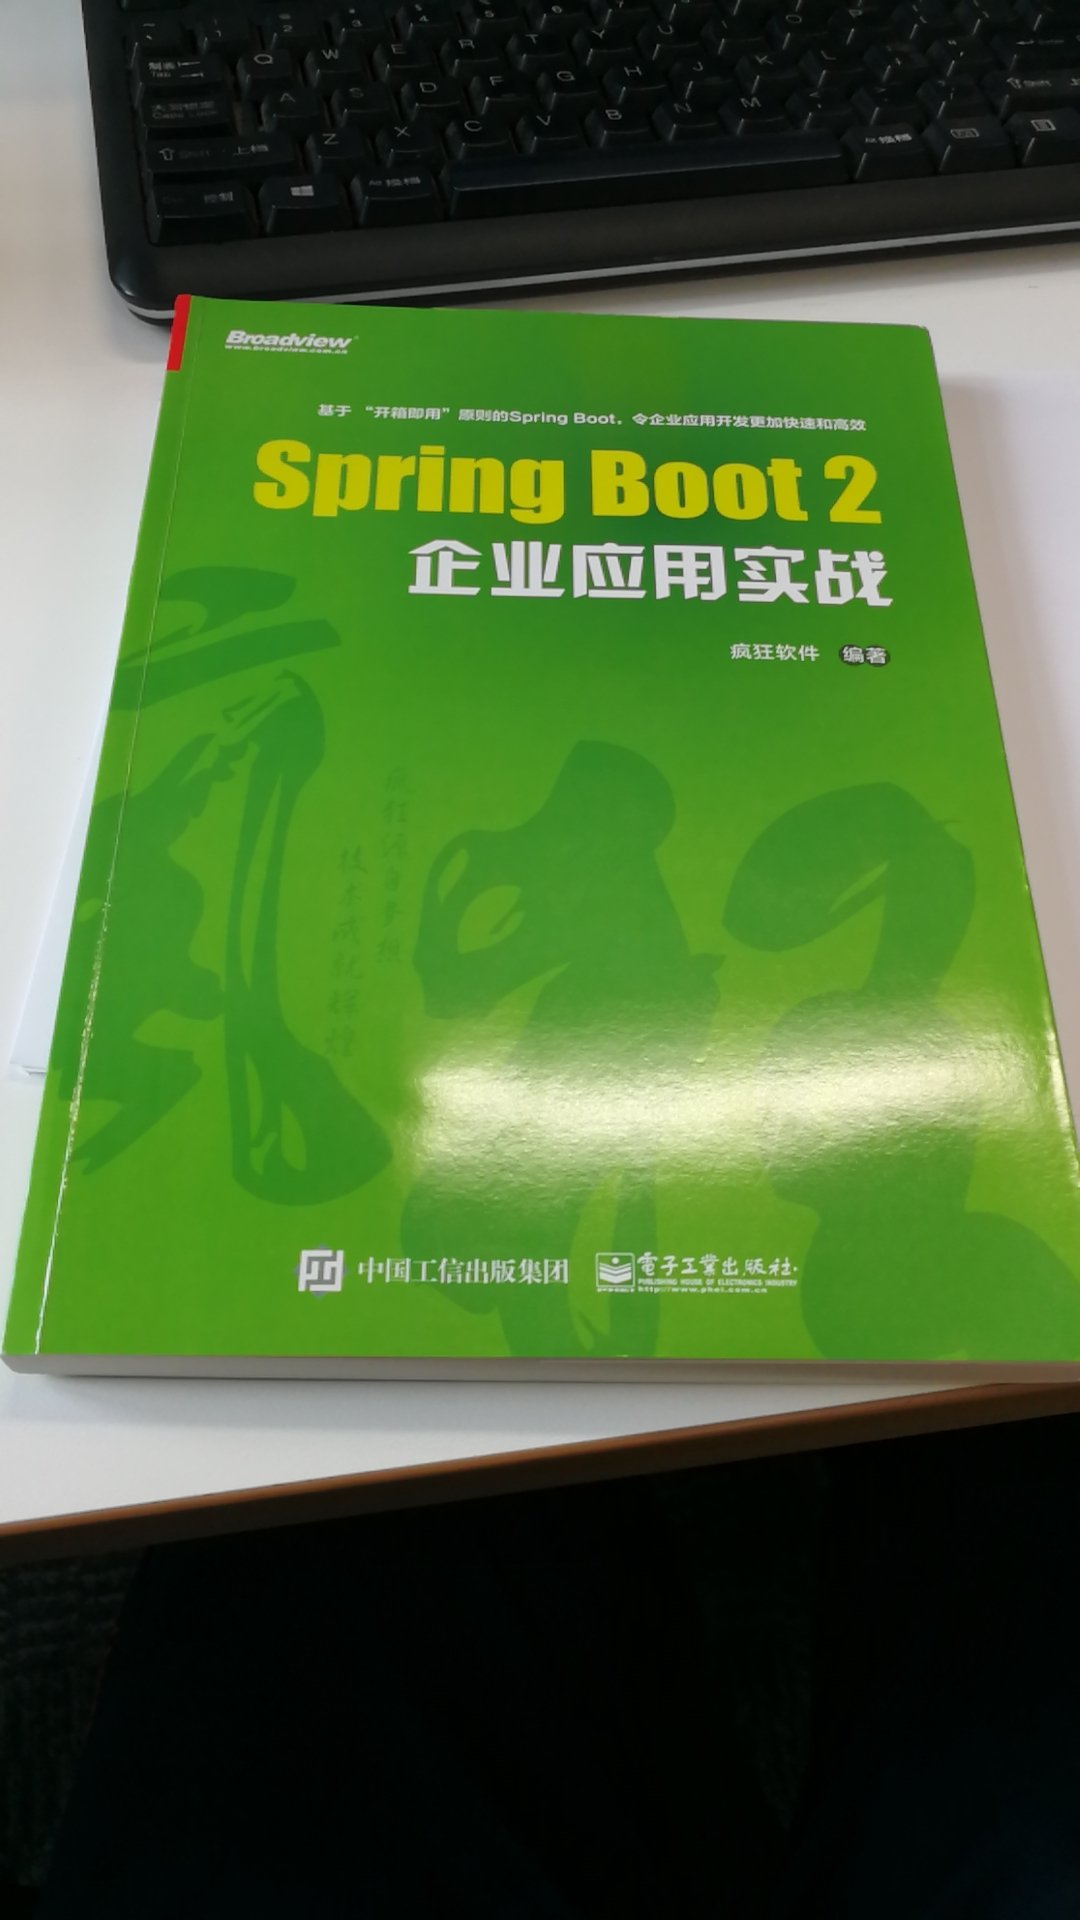 比想象的薄一点 入门书籍 spring boot还是蛮有用的